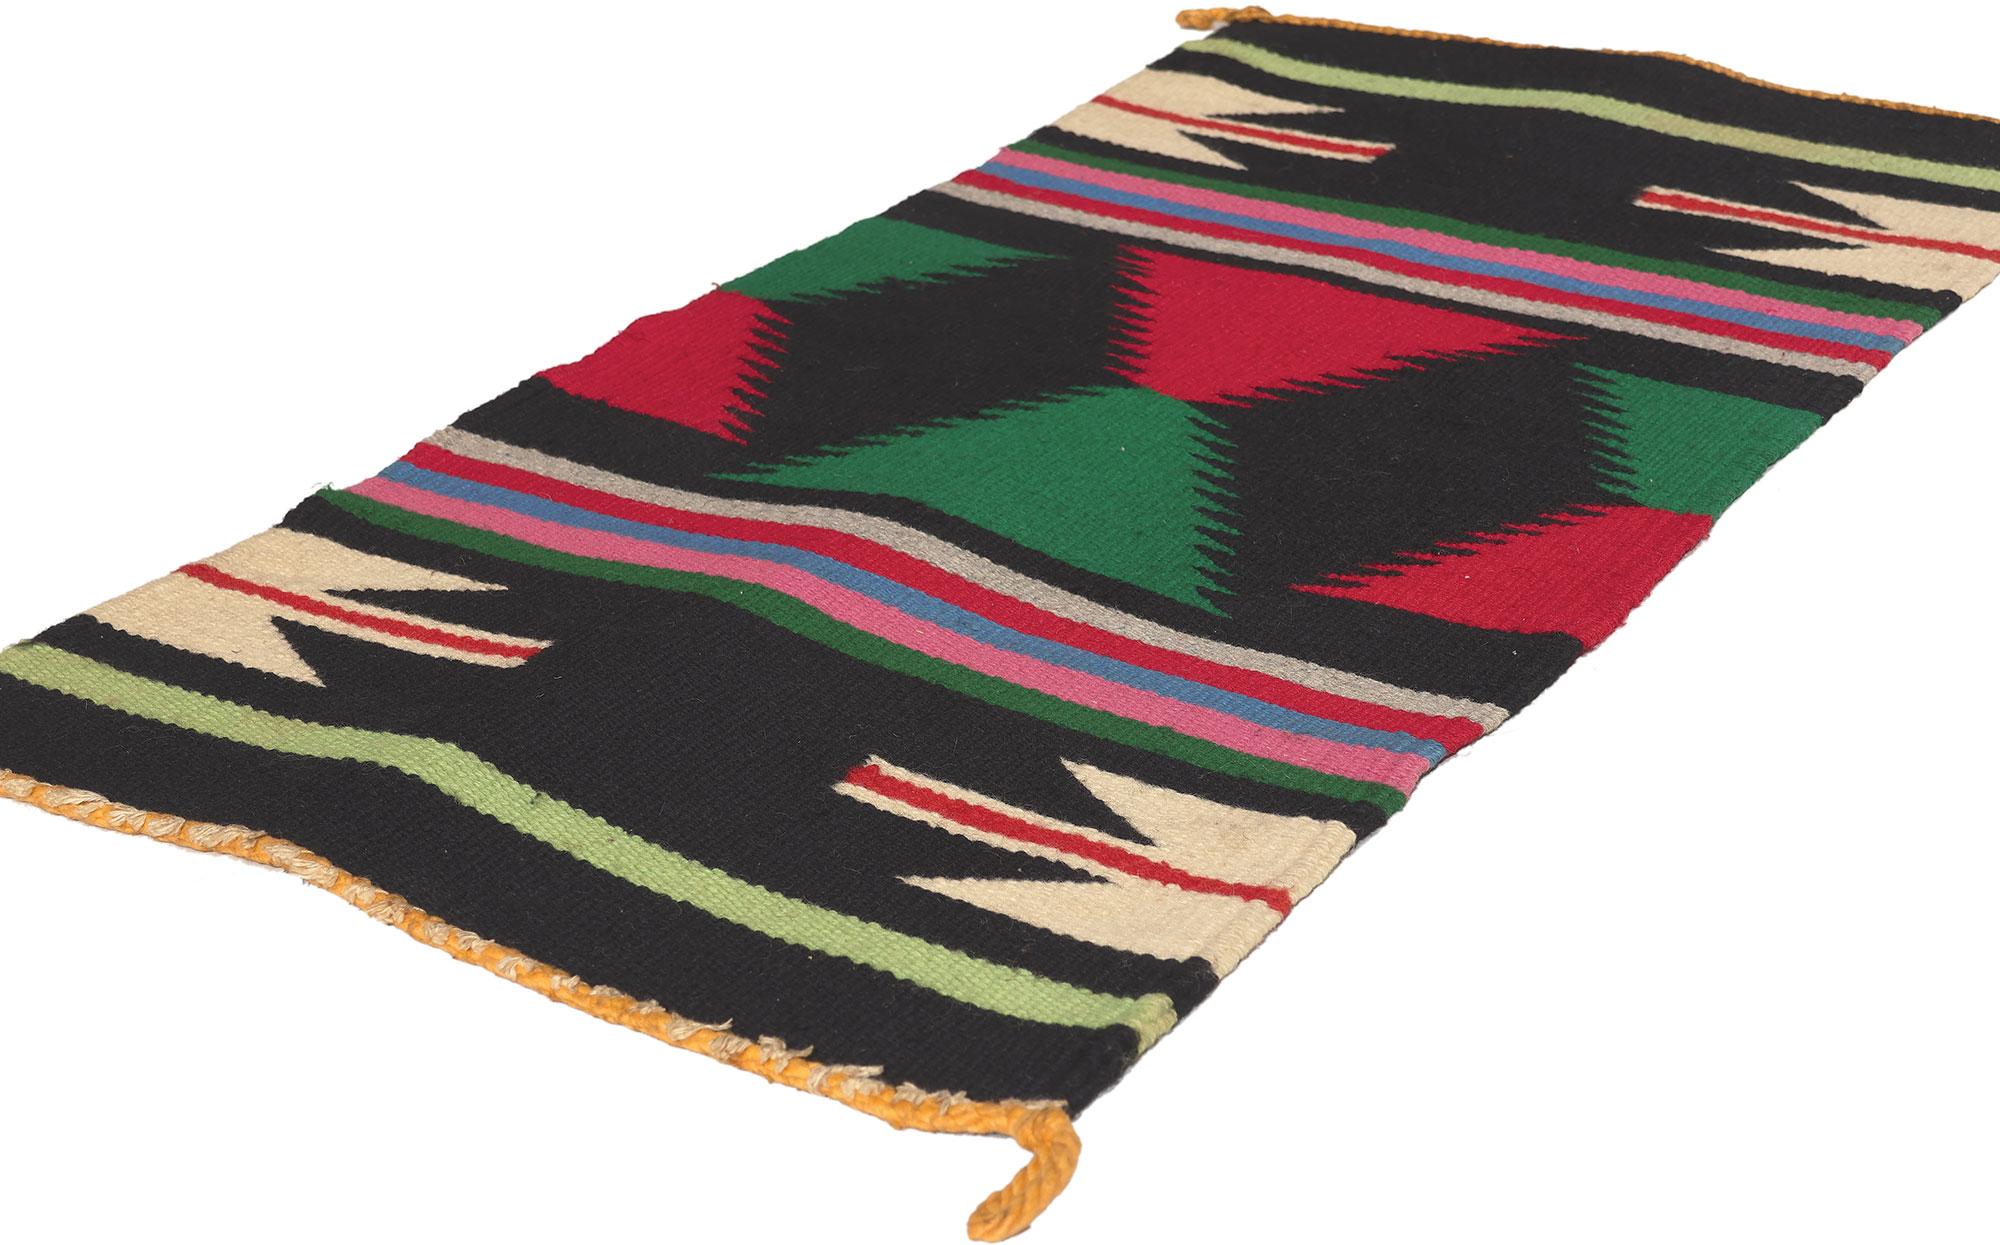 78628 Vintage Pueblo Textile, 01'06 x 03'01.
Le maximalisme rencontre le chic bohème dans ce tapis kilim vintage Pueblo du Sud-Ouest tissé à la main. La sensibilité éclectique et les couleurs vives de cette pièce créent un style boho chic